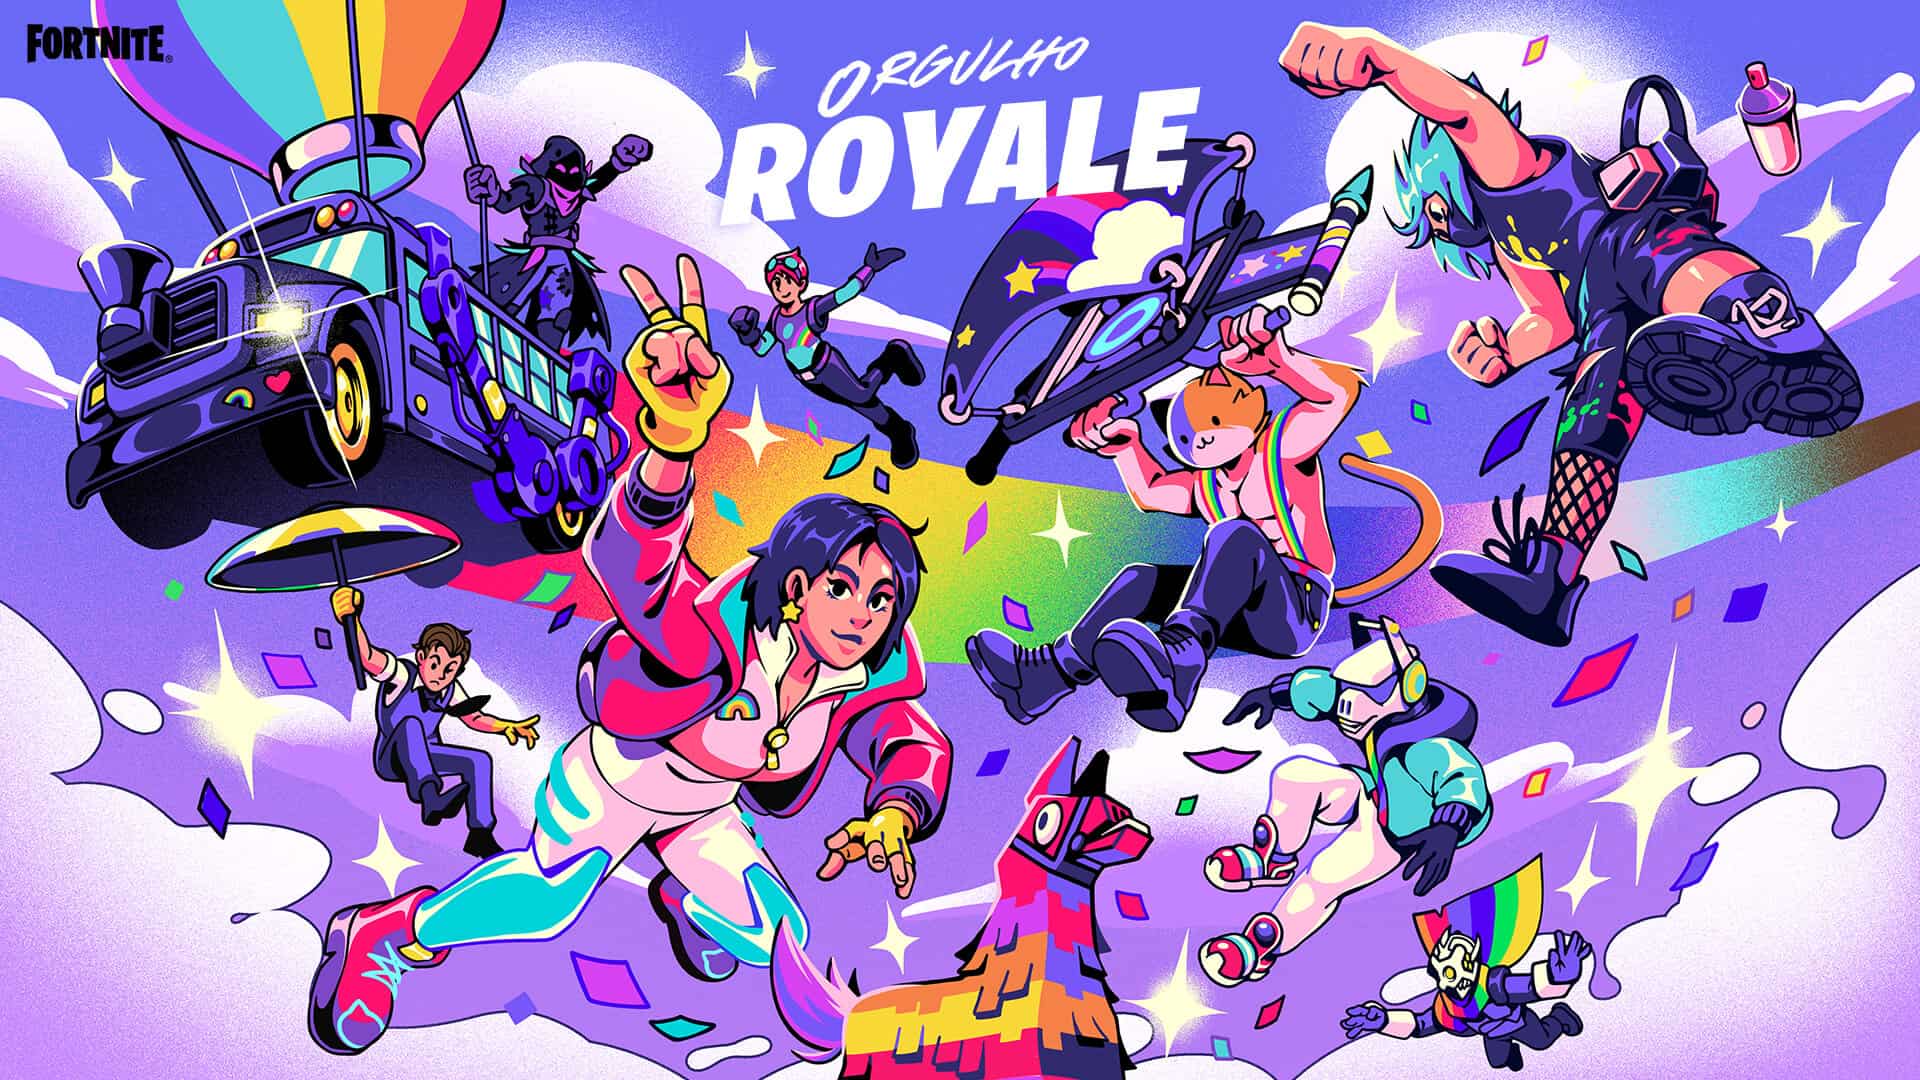 Orgulho Royale: 'Fortnite' lança evento LGBTQIA+; confira - Olhar